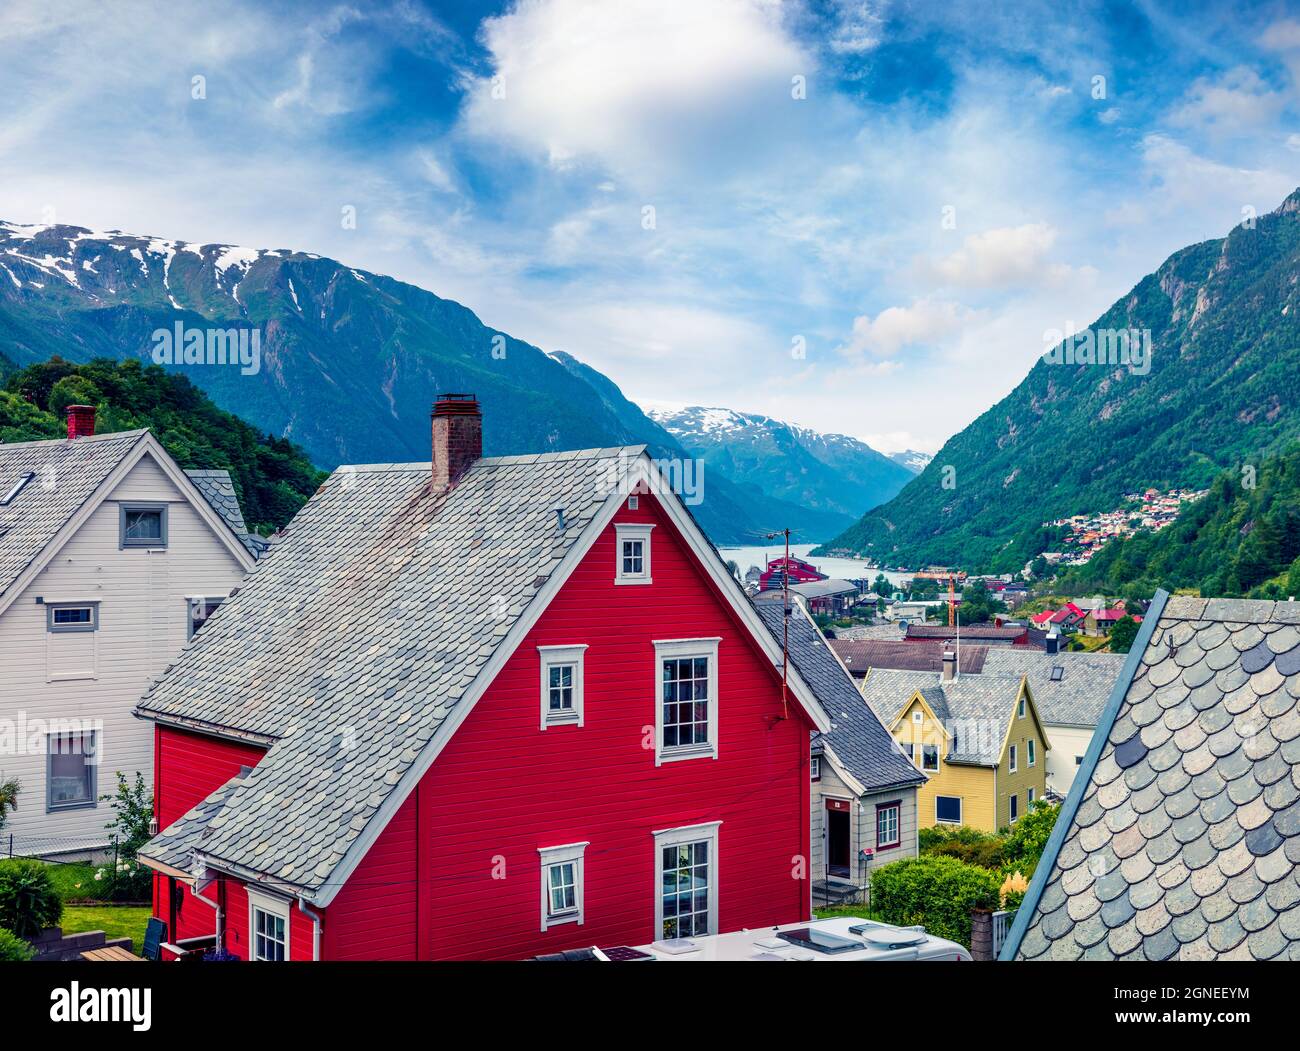 Architettura tipica norwagiana nella città di Odda, contea di Hordaland, Norvegia. Bella vista estiva del fiordo Hardangerfjord. Concetto di viaggio background. Foto Stock